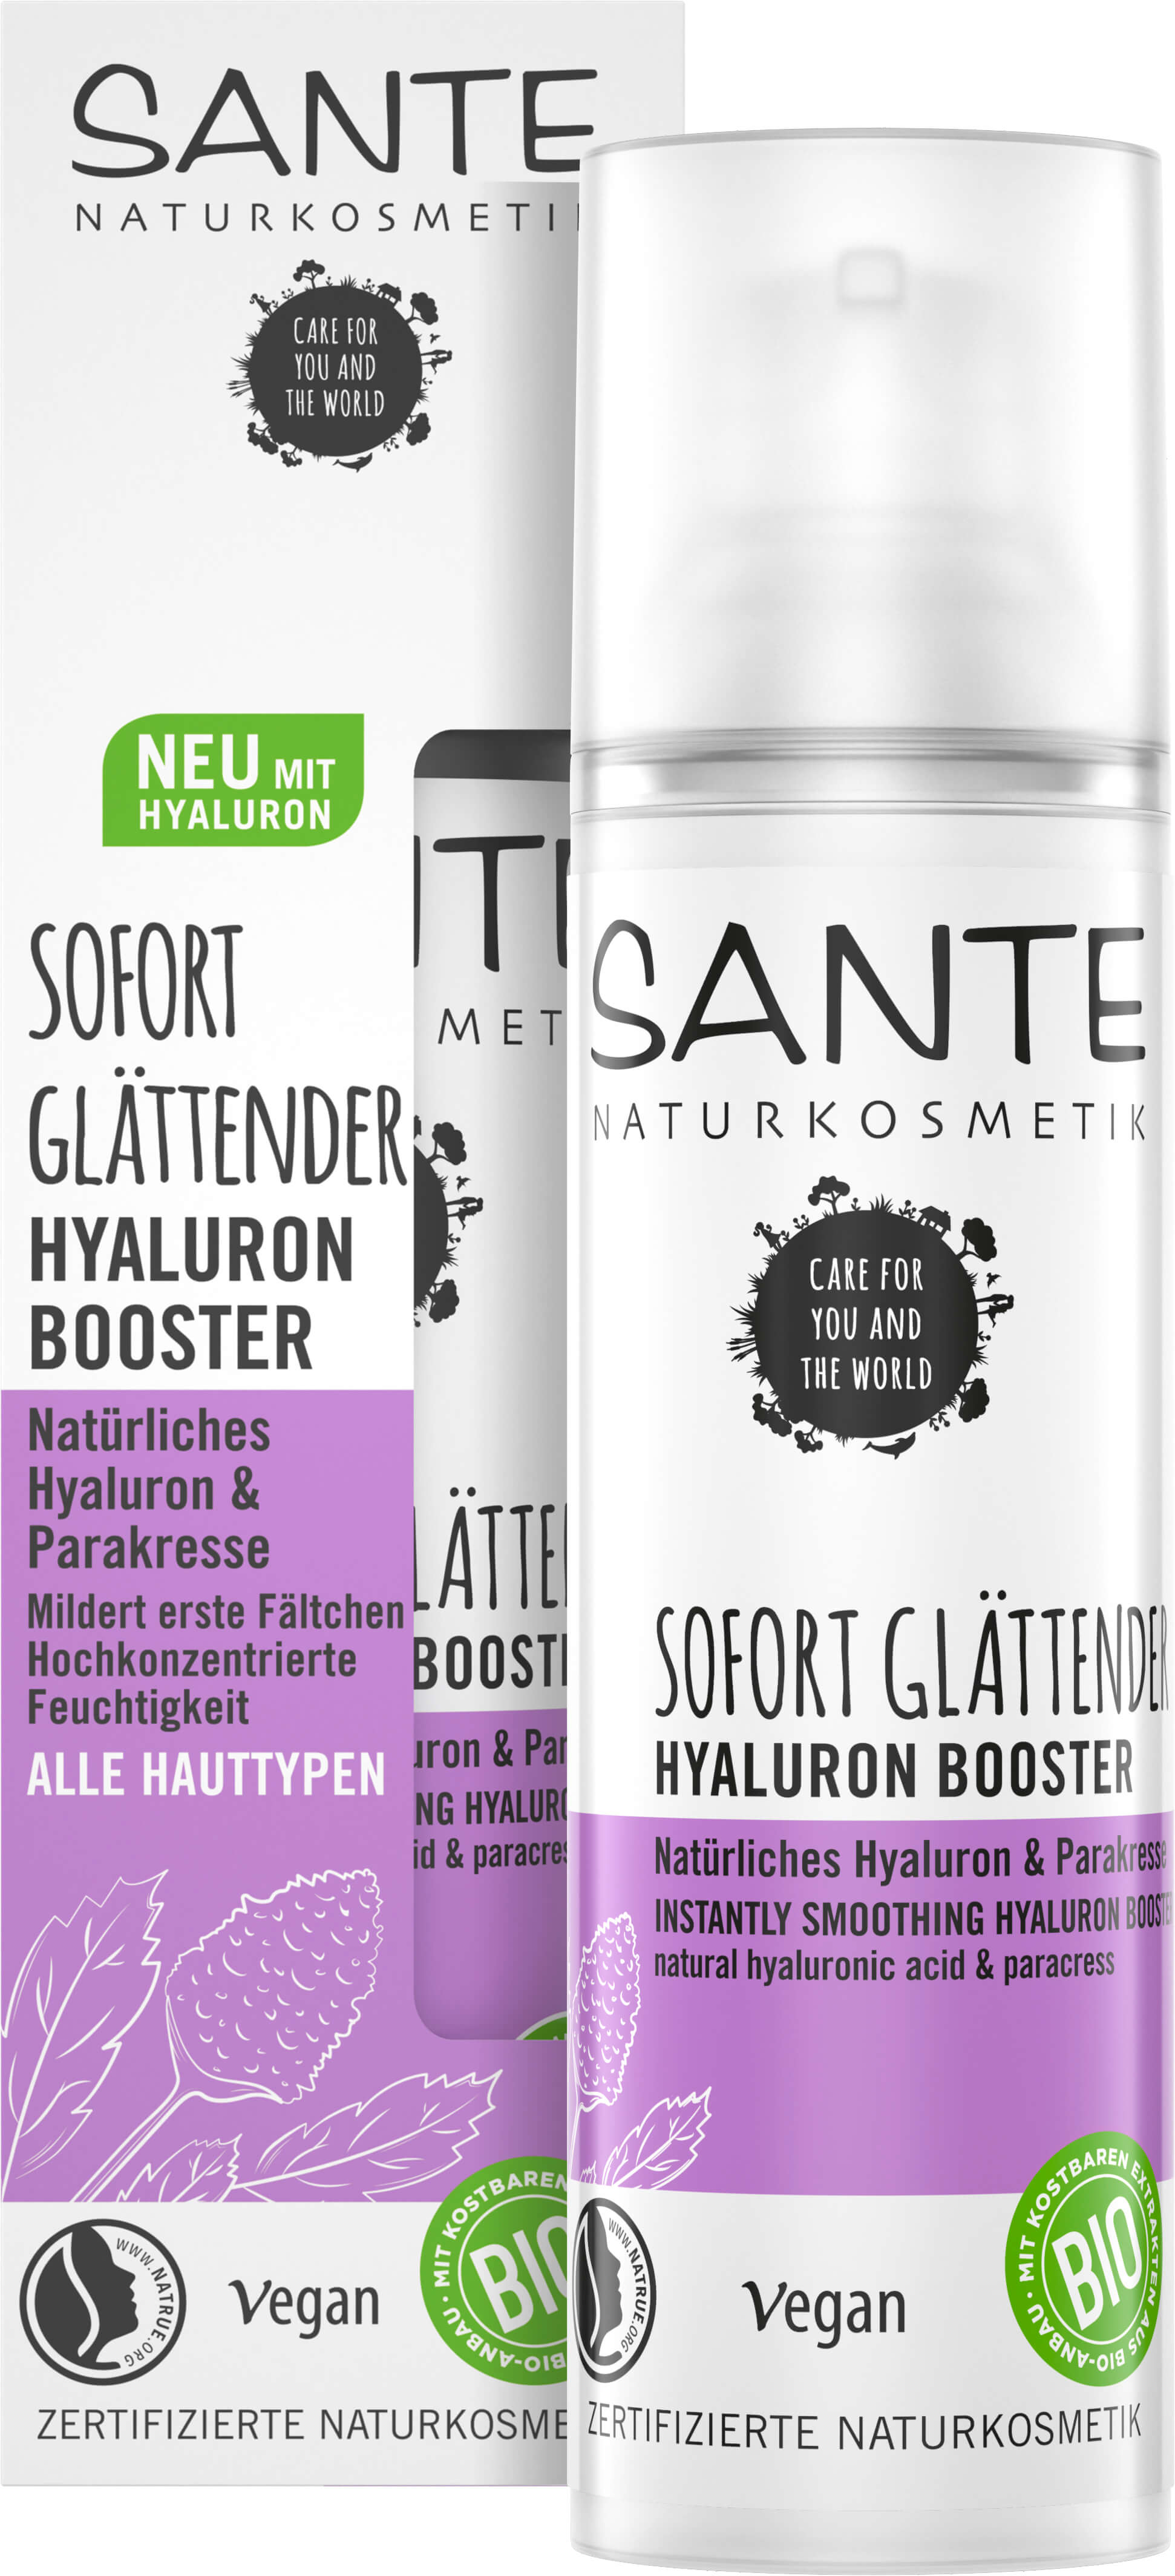 Sofort Glättender Hyaluron Booster Natürliches Hyaluron & Parakresse | SANTE  Naturkosmetik